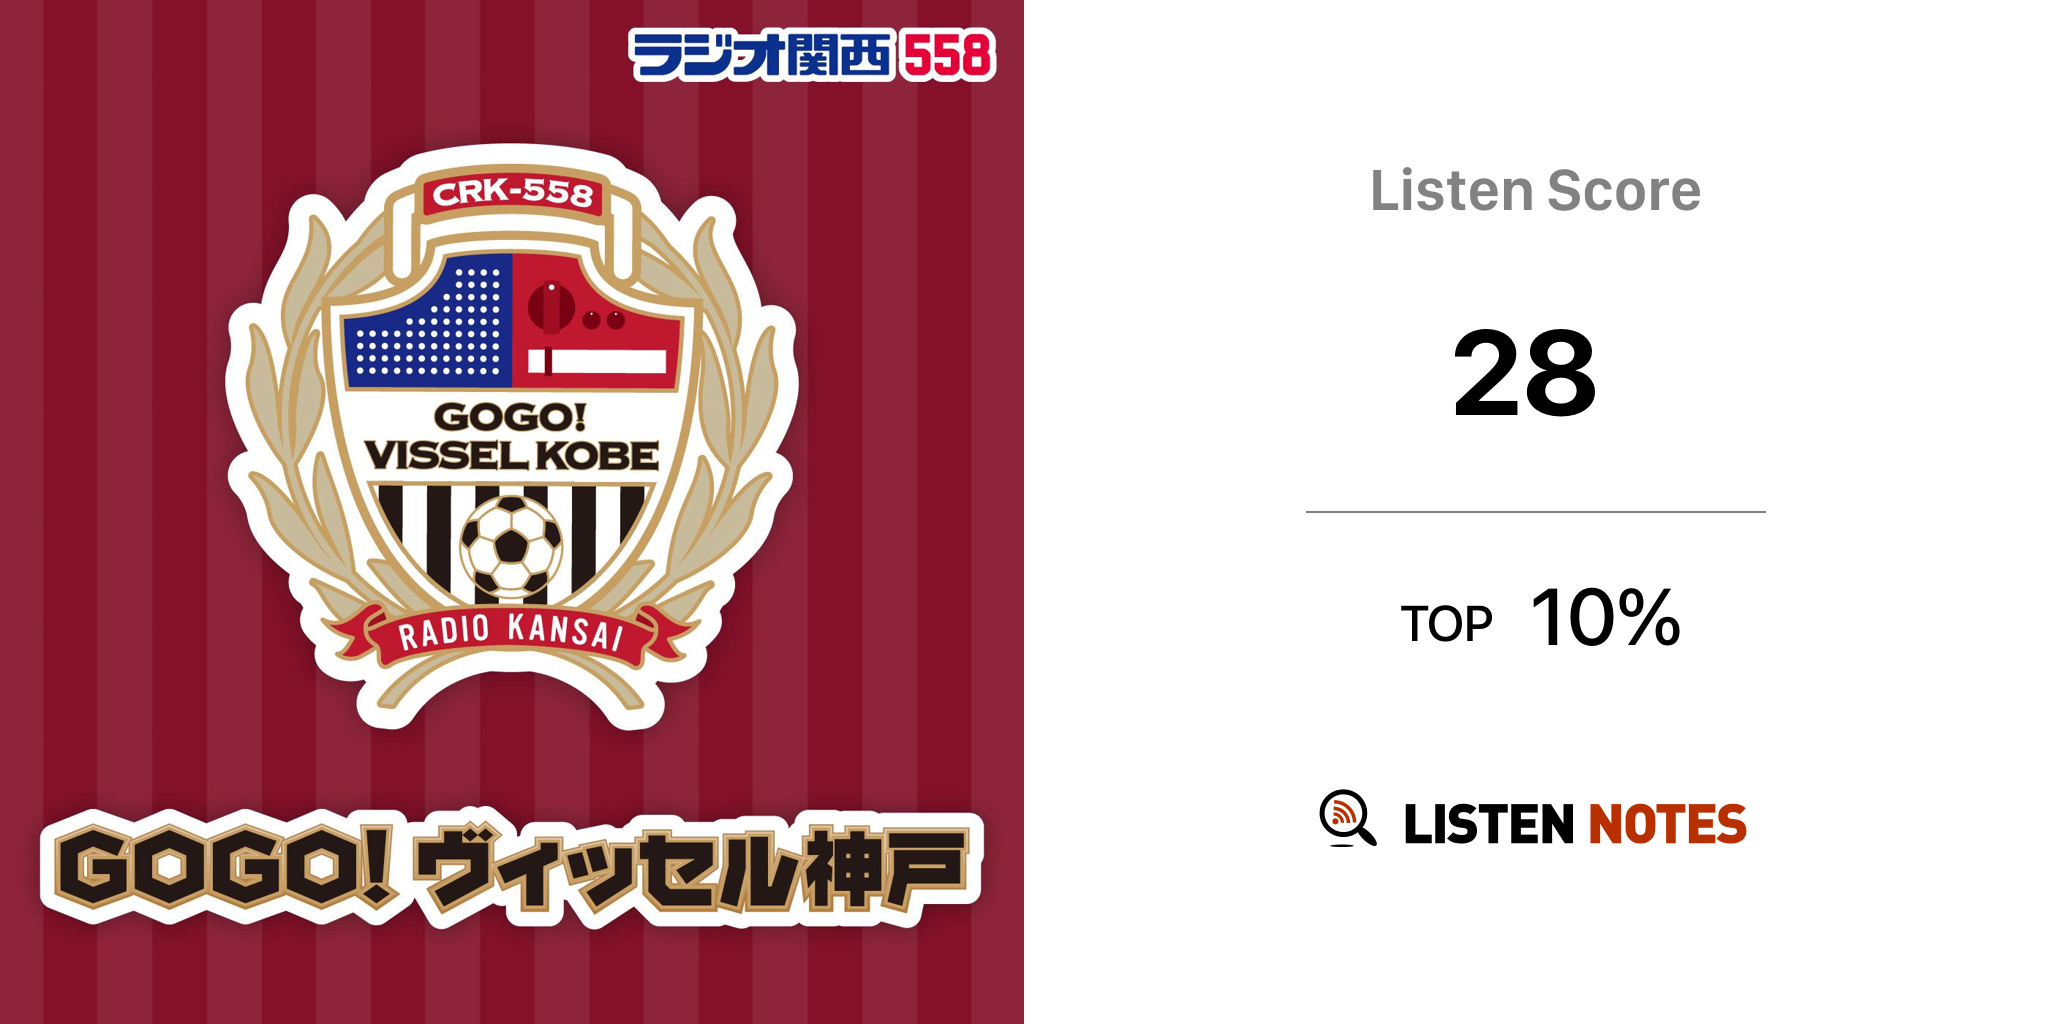 Gogo ヴィッセル神戸 Podcast ラジオ関西 558khz Listen Notes